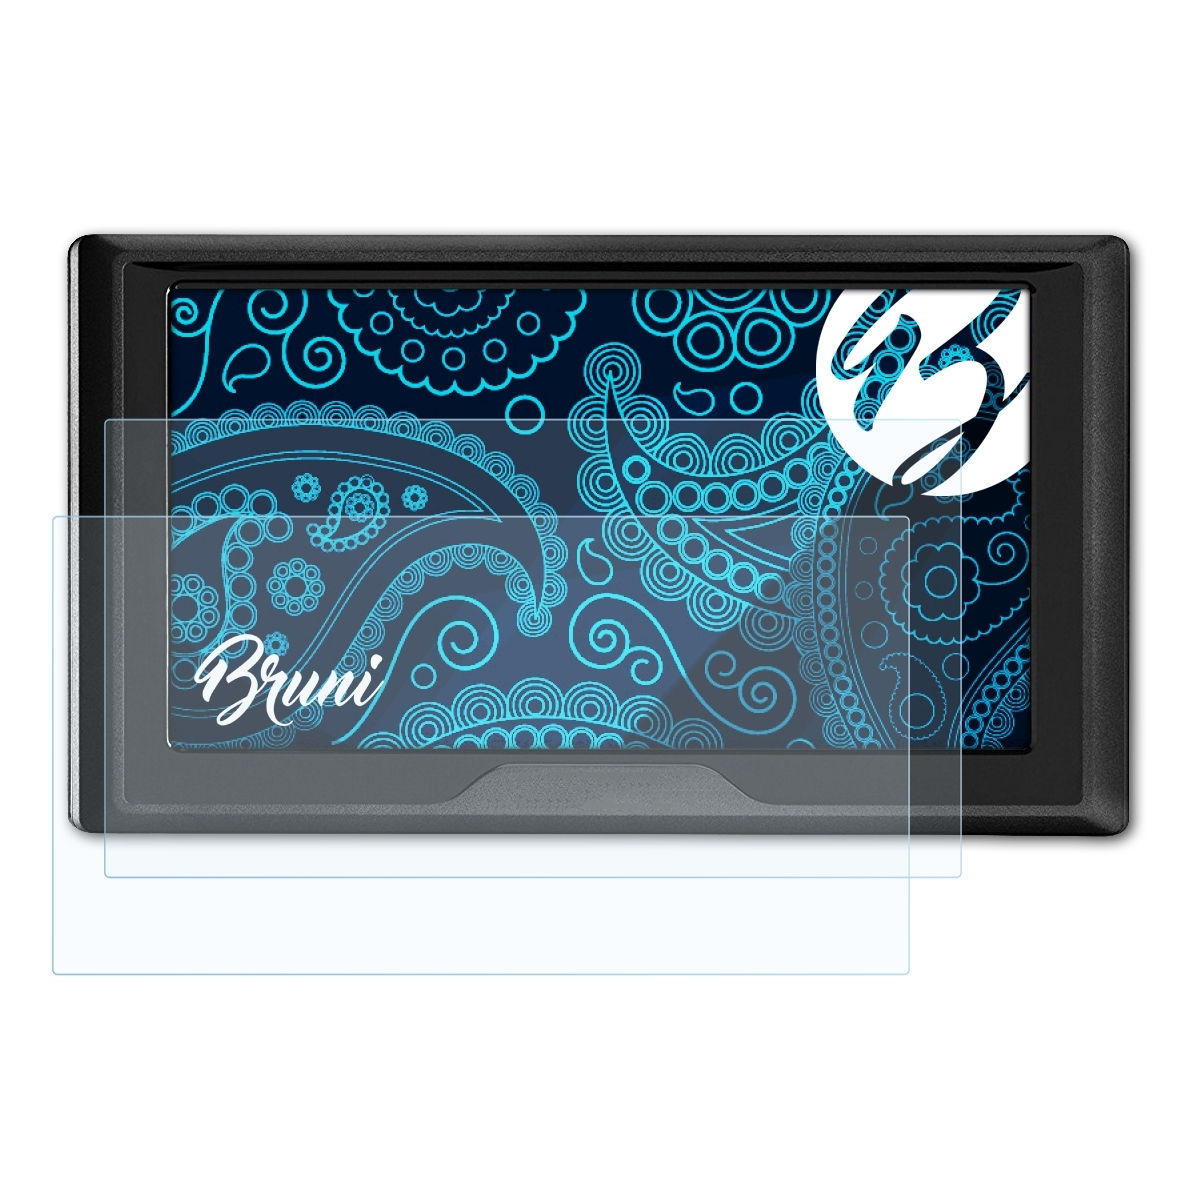 BRUNI Garmin 2x Schutzfolie(für Drive 61LMT-S) Basics-Clear